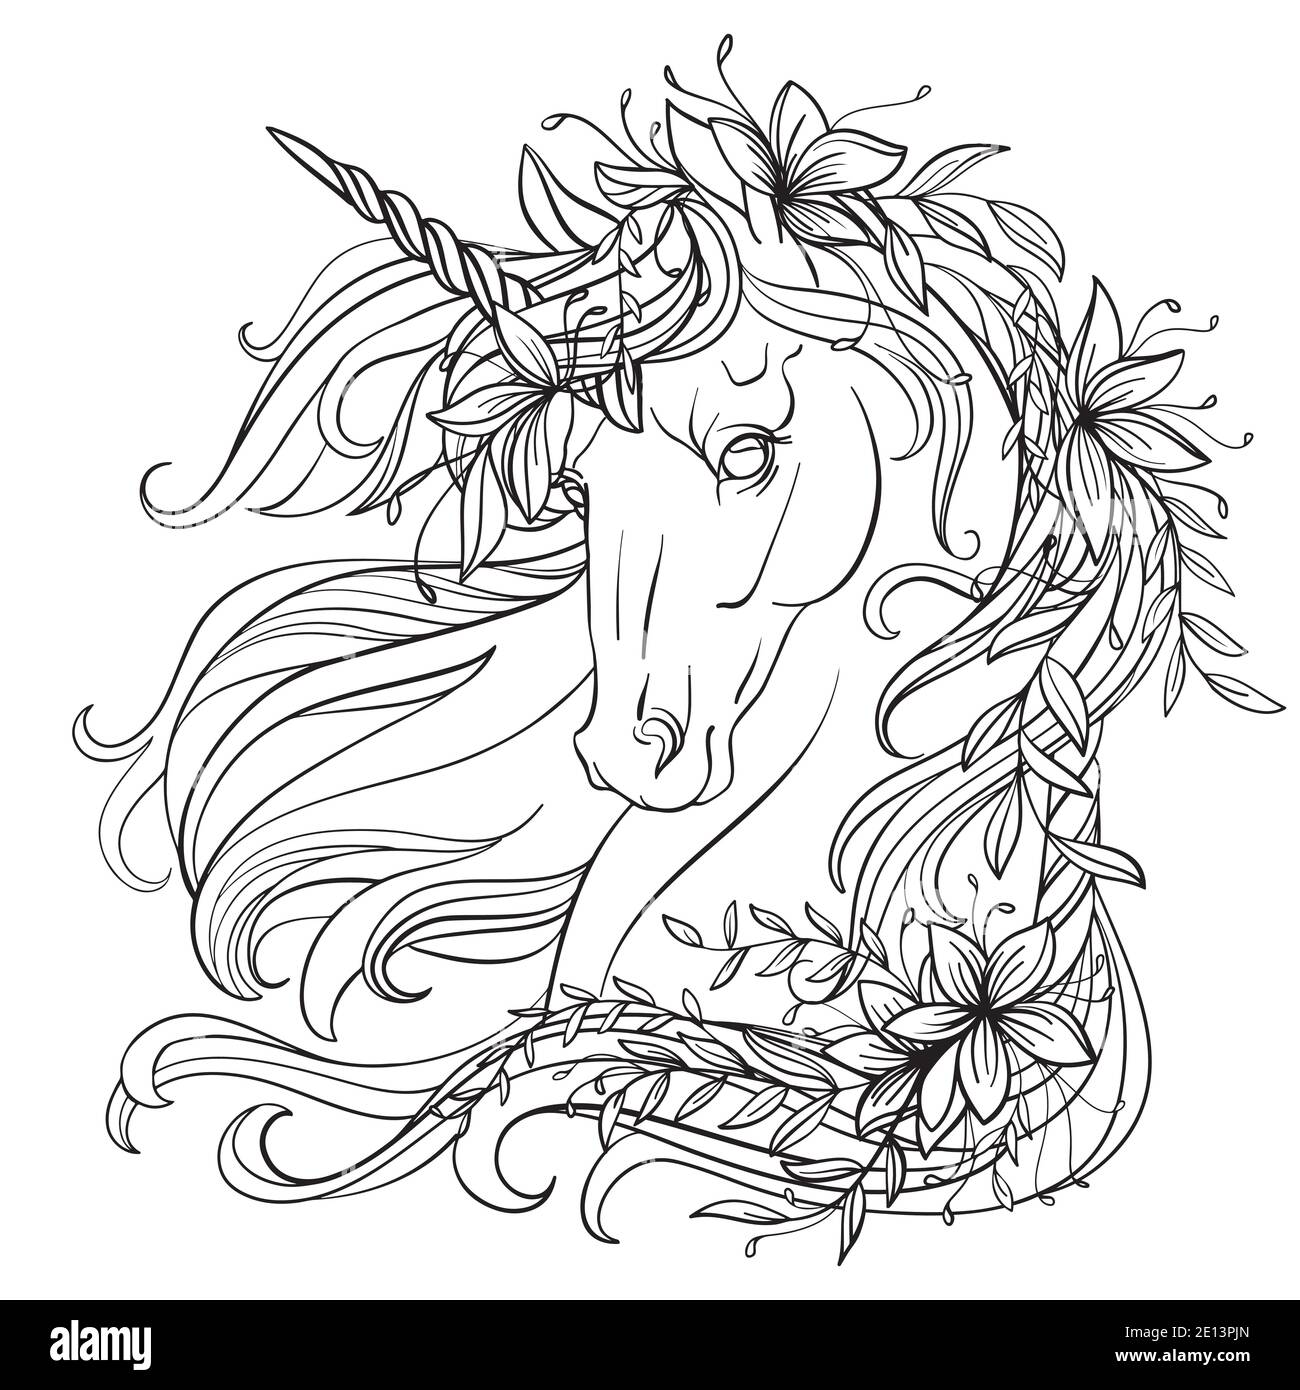 Disegno unicorno isolato con fiori nella sua lunga manne. Modello a groviglio per libro da colorare, tatuaggio, t-shirt, logo, segno. Illustratio stilizzato Illustrazione Vettoriale